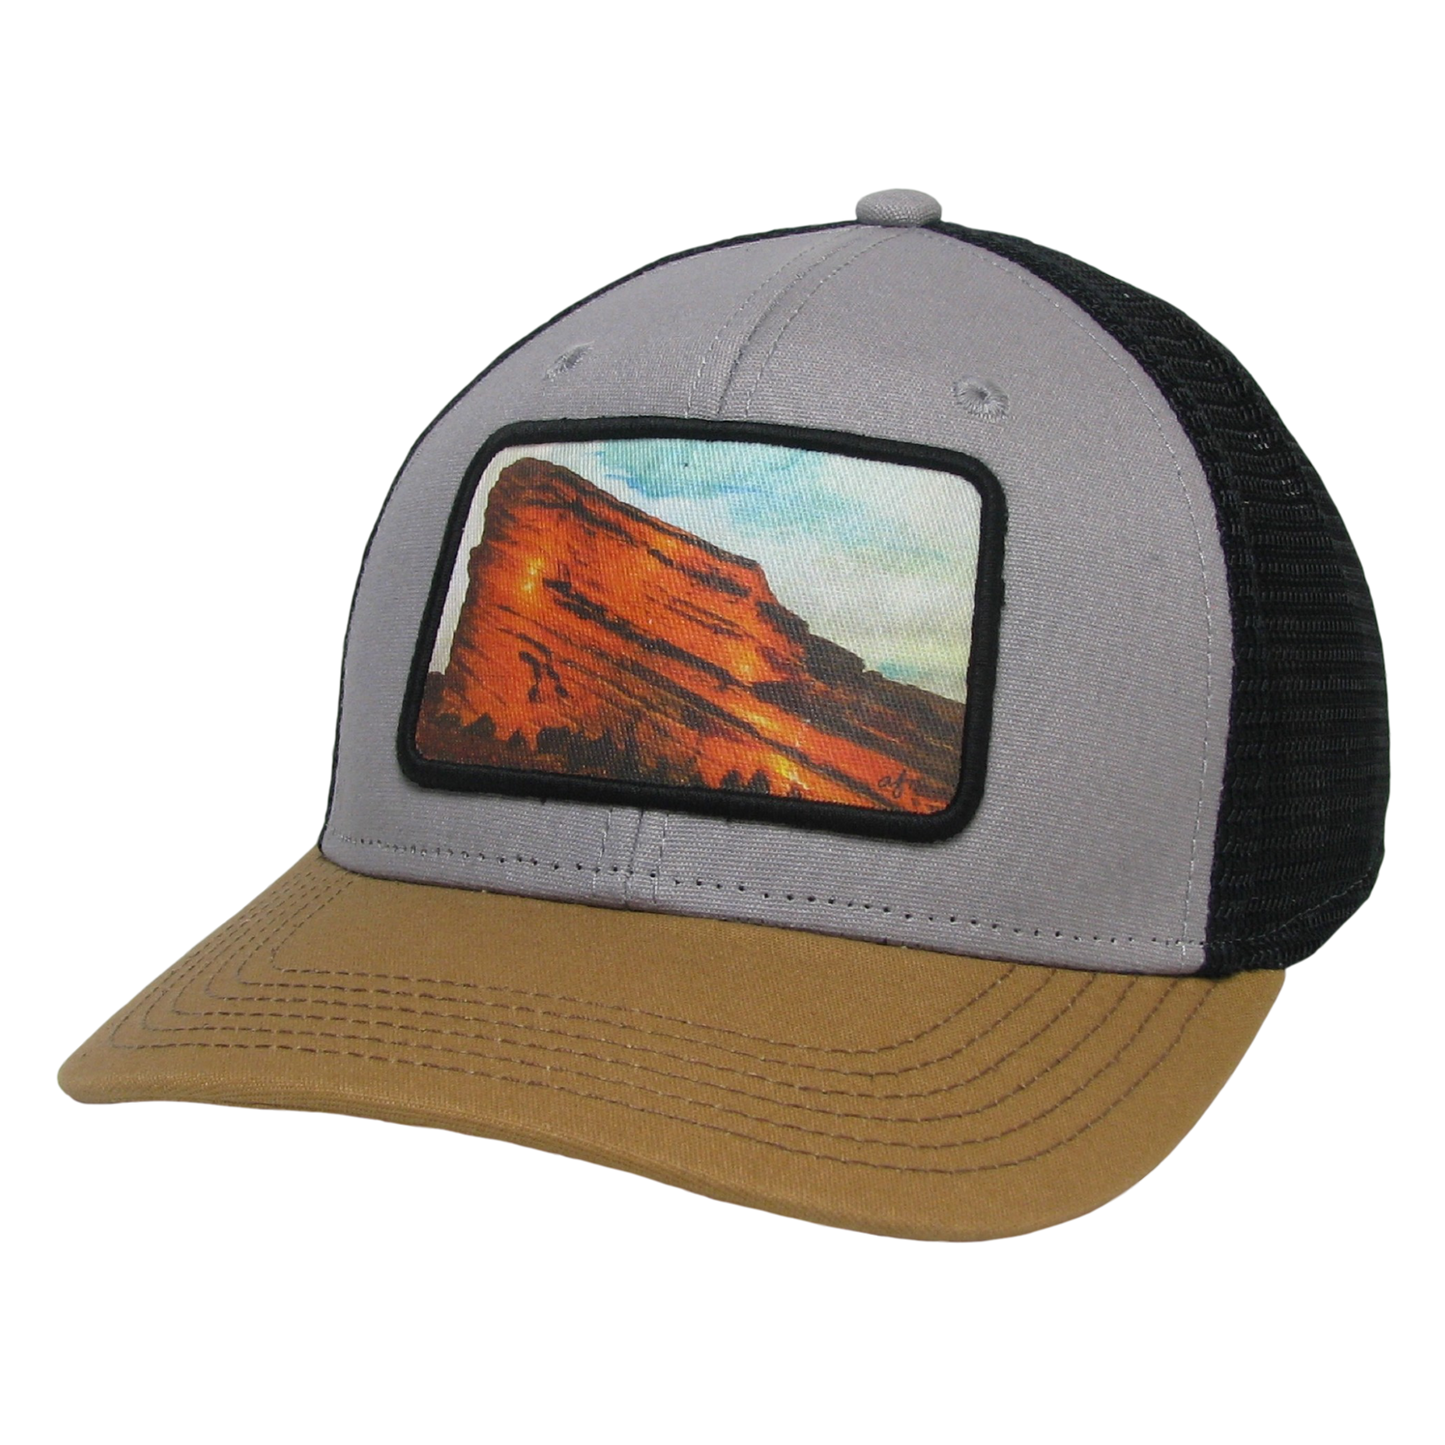 Red Rocks Mid-Pro Trucker Hat in Grey/Caramel/Black